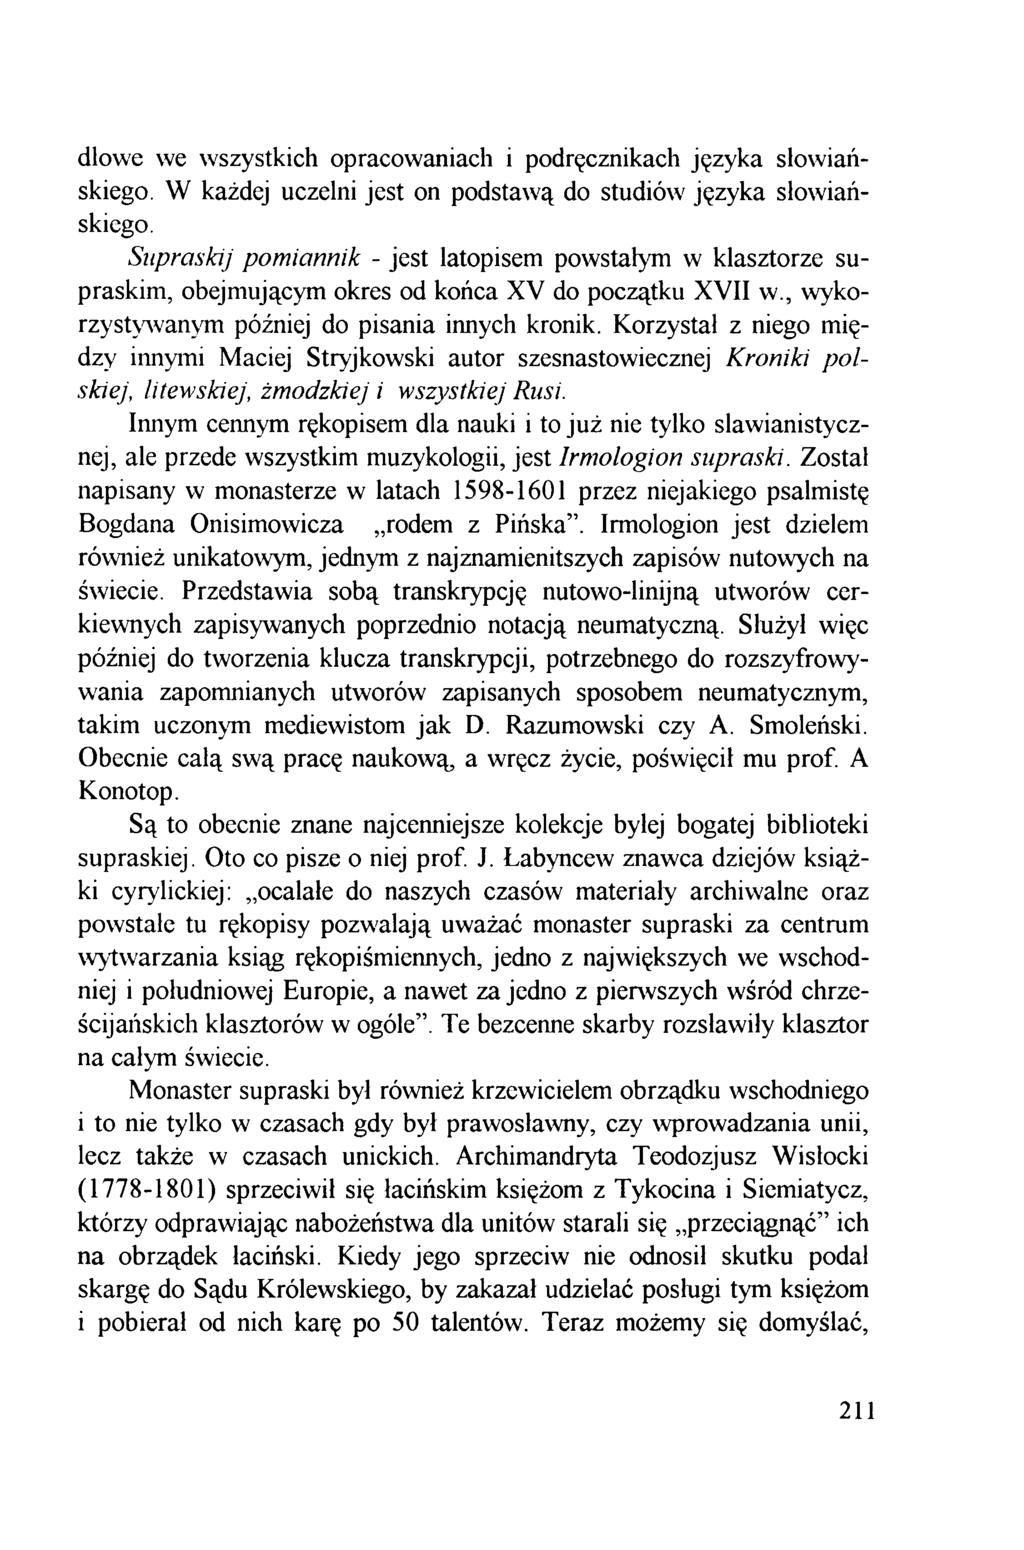 dlowe we wszystkich opracowaniach i podręcznikach języka słowiańskiego. W każdej uczelni jest on podstawą do studiów języka słowiańskiego.